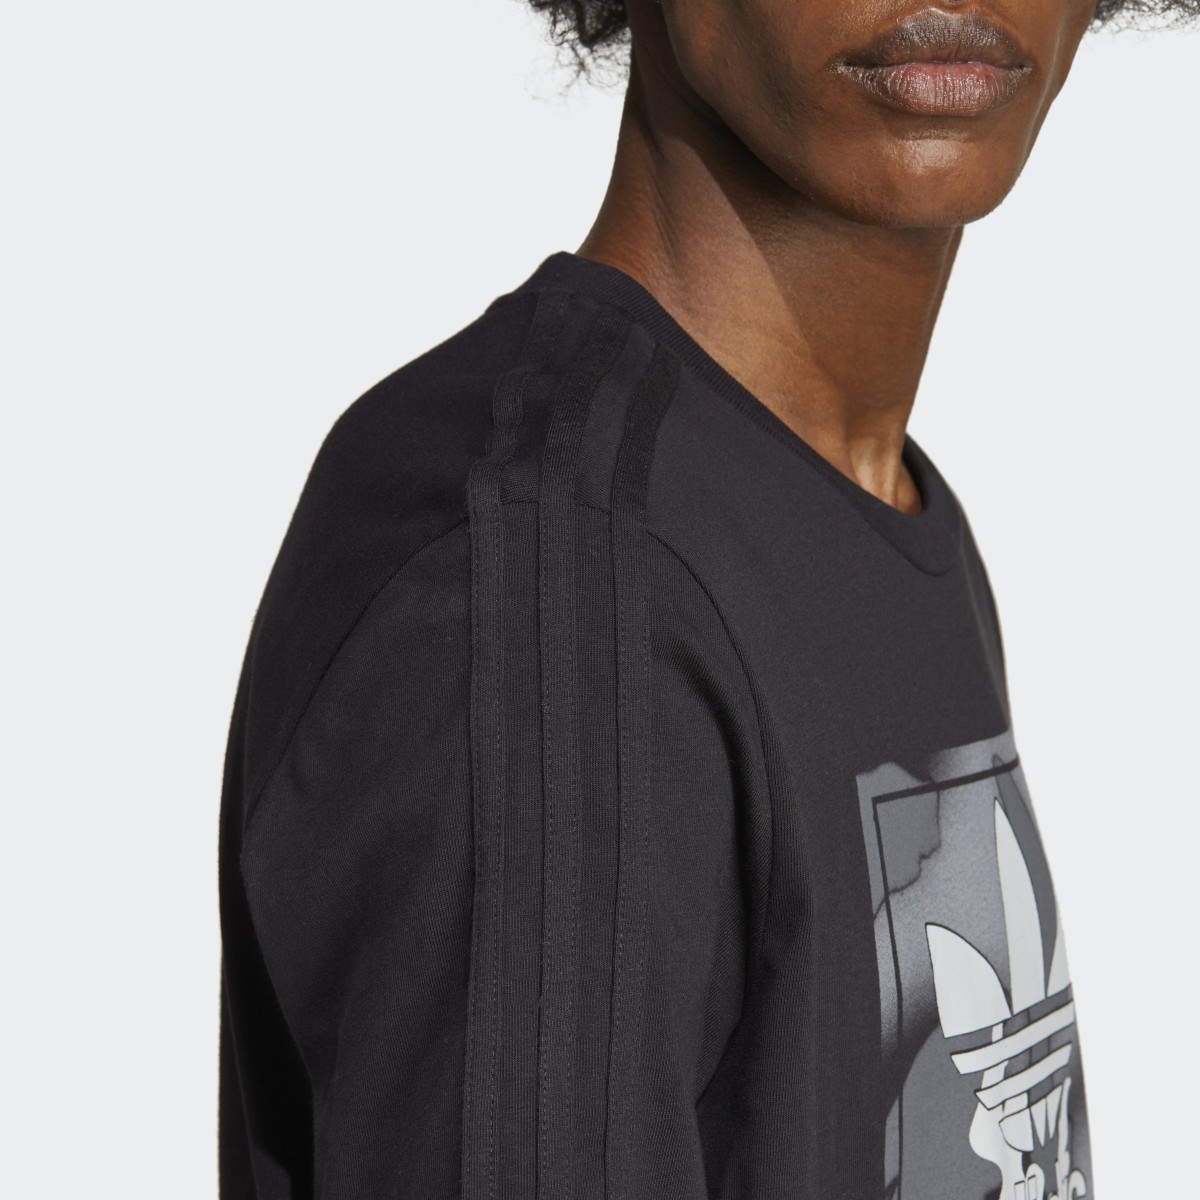 Adidas T-shirt languette graphique à motif camouflage. 7